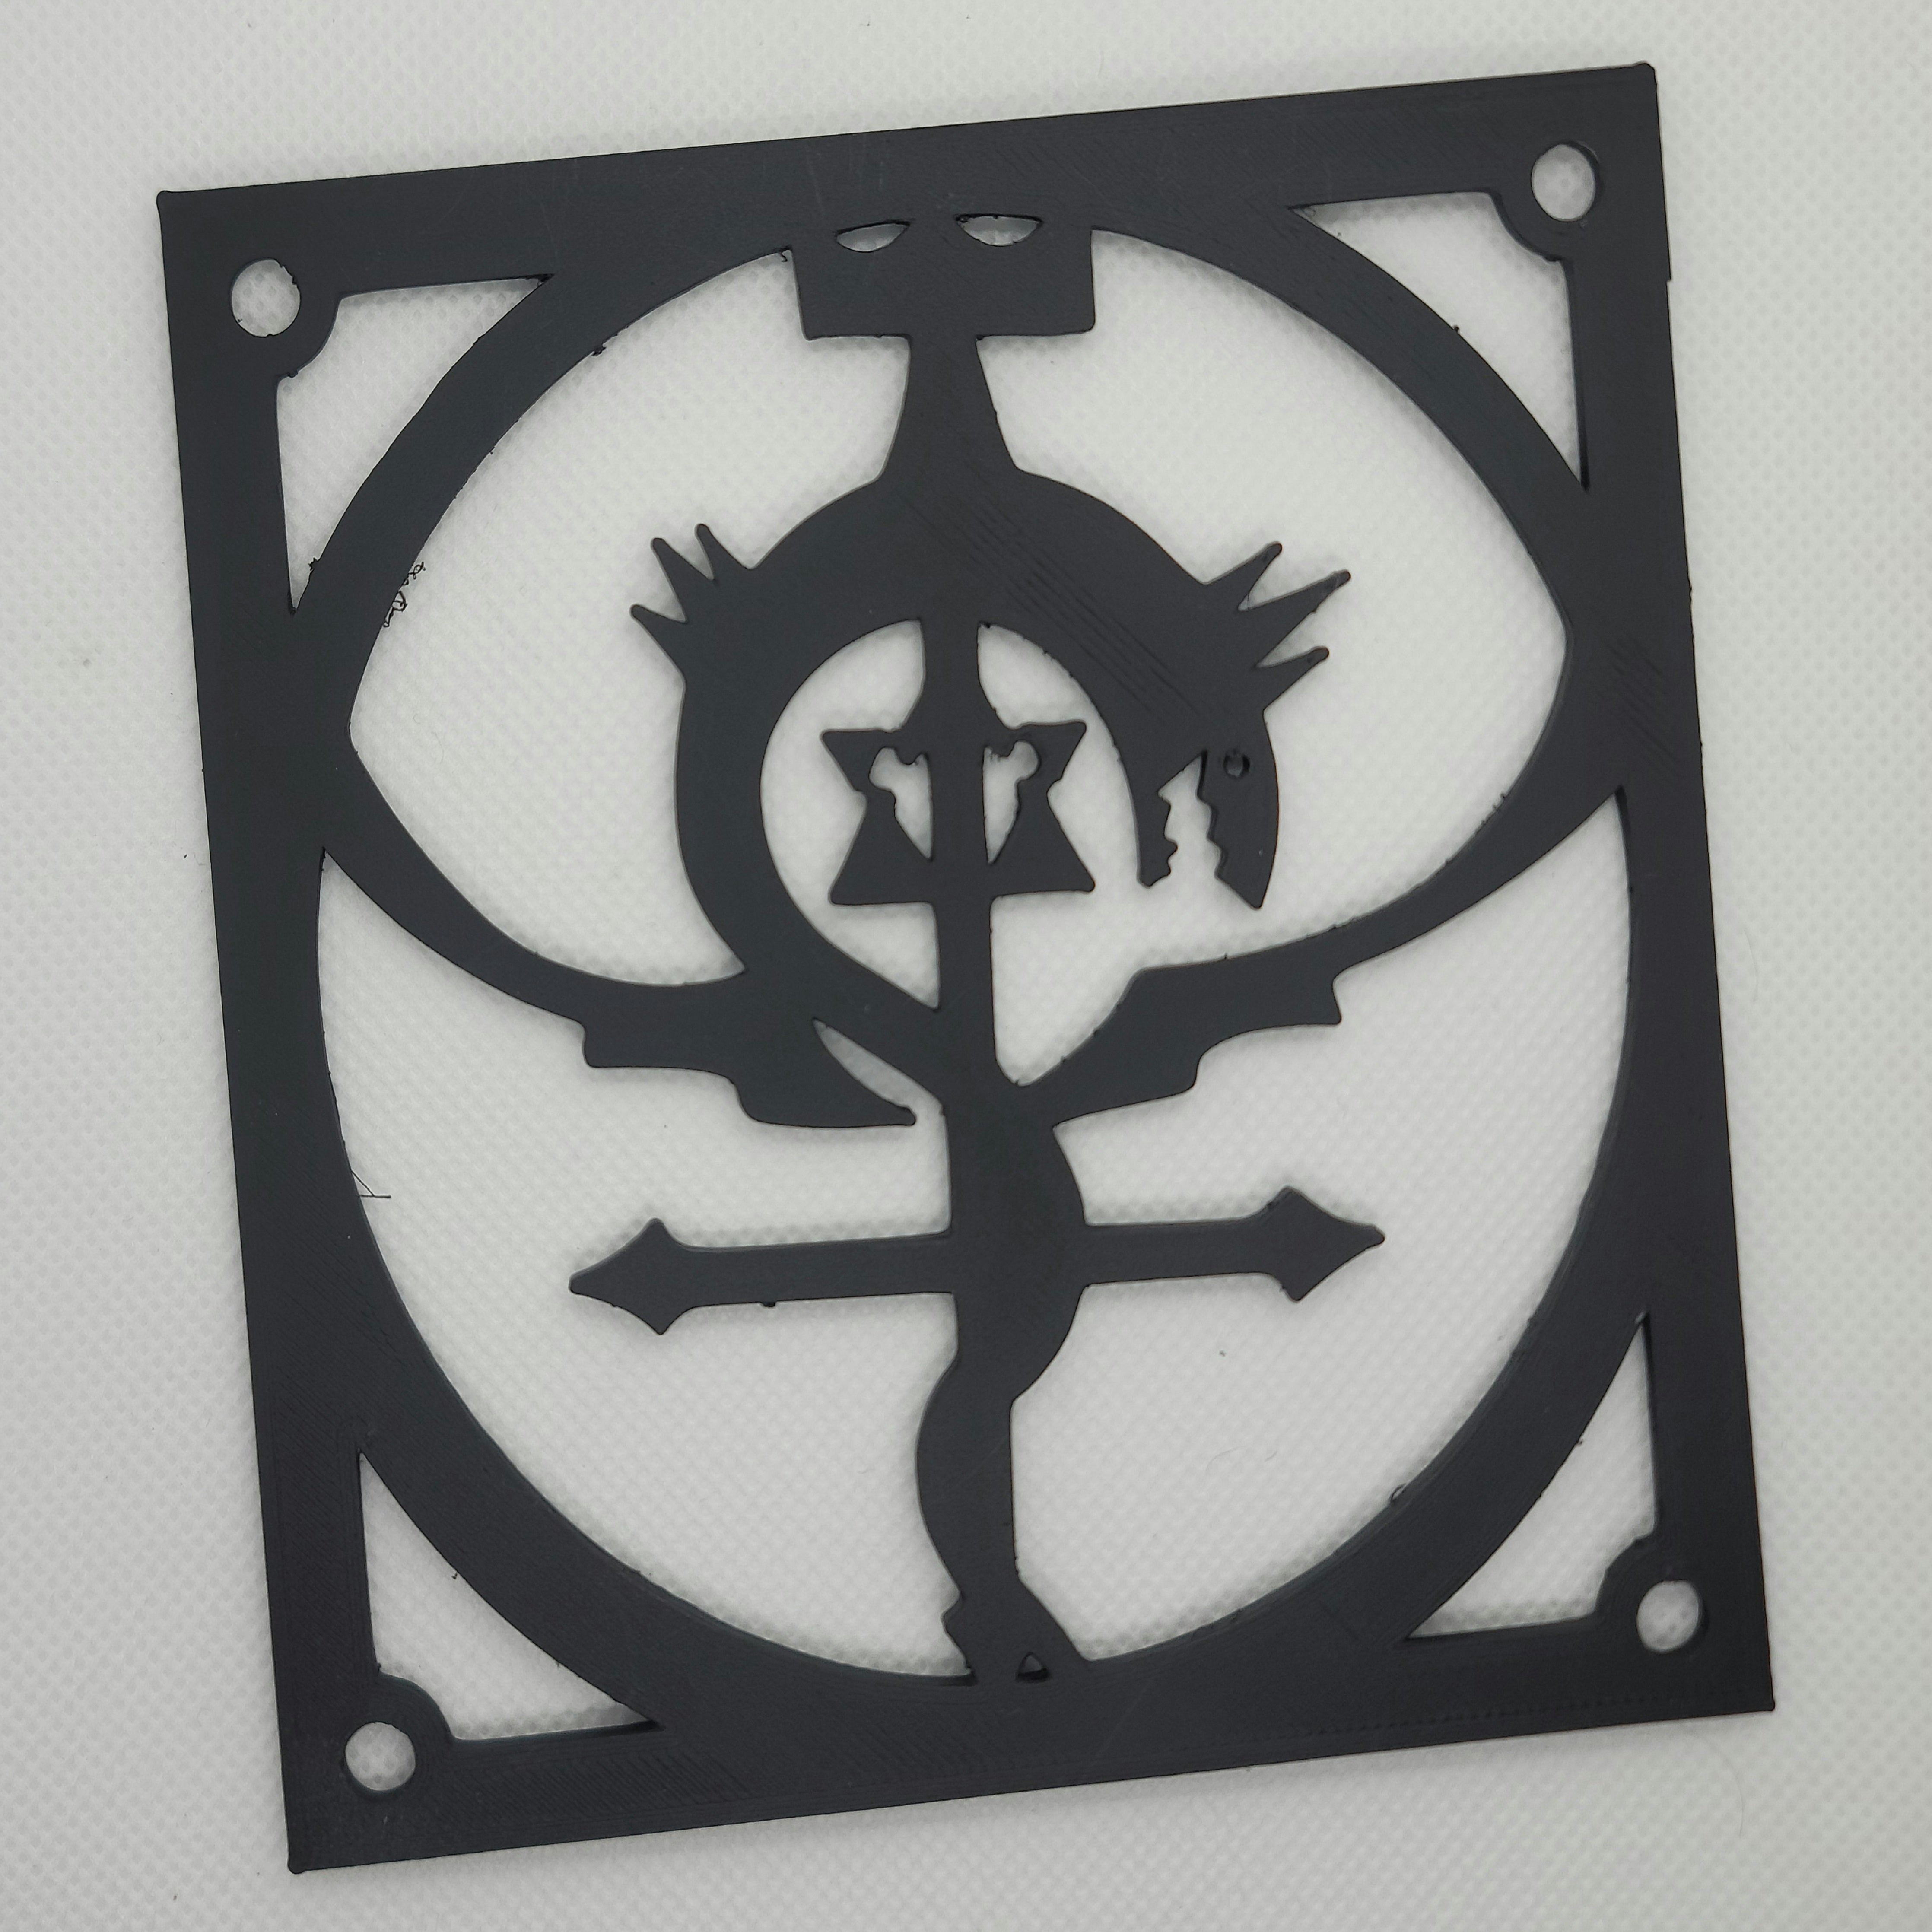 fullmetal alchemist brotherhood symbol